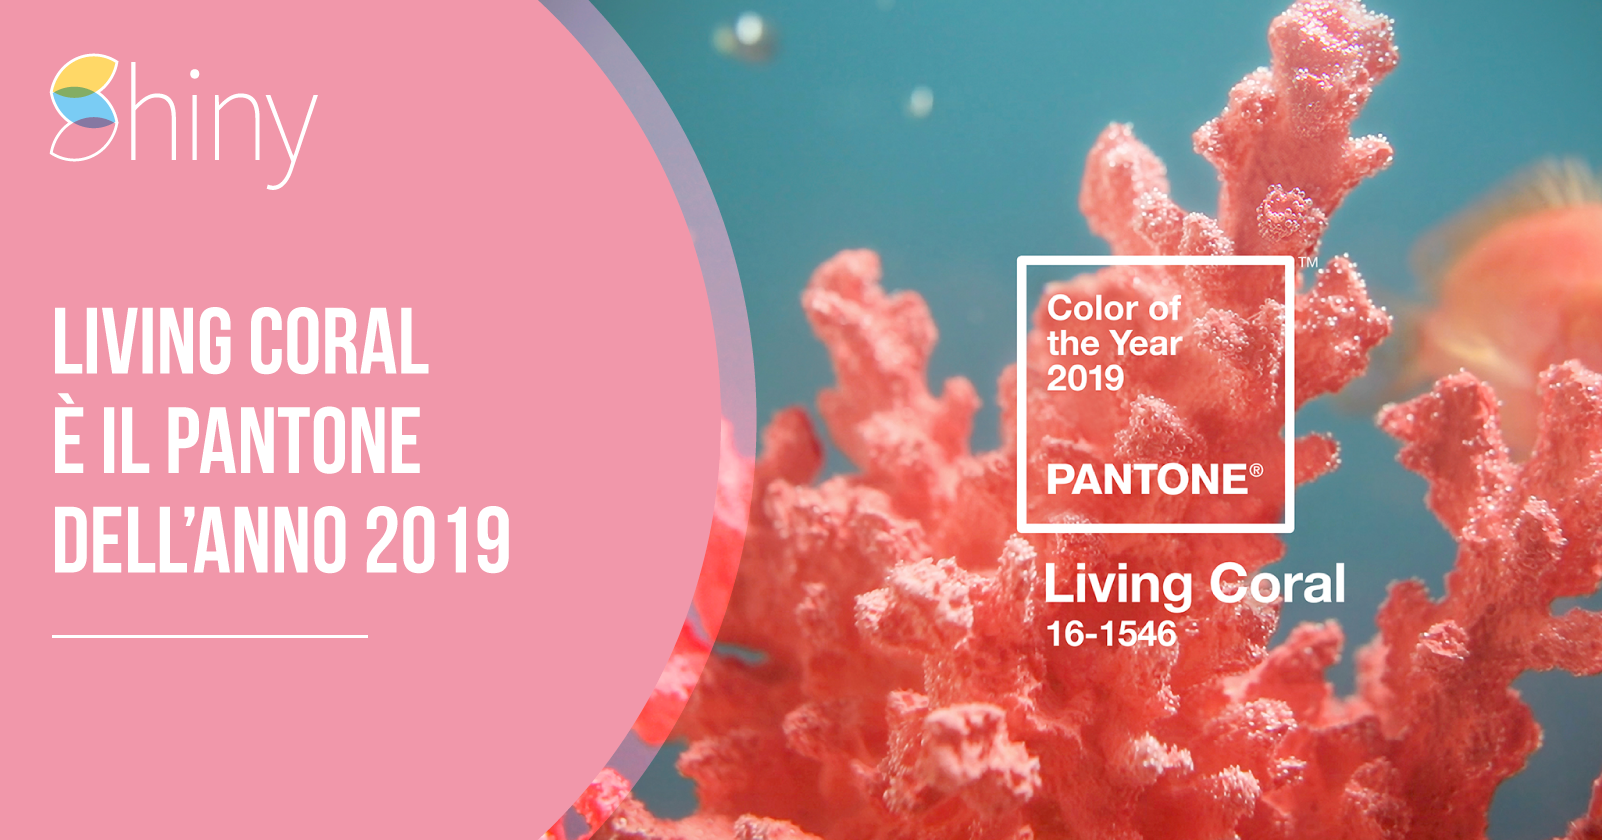 Living Coral è il Colore Pantone dell'anno 2019